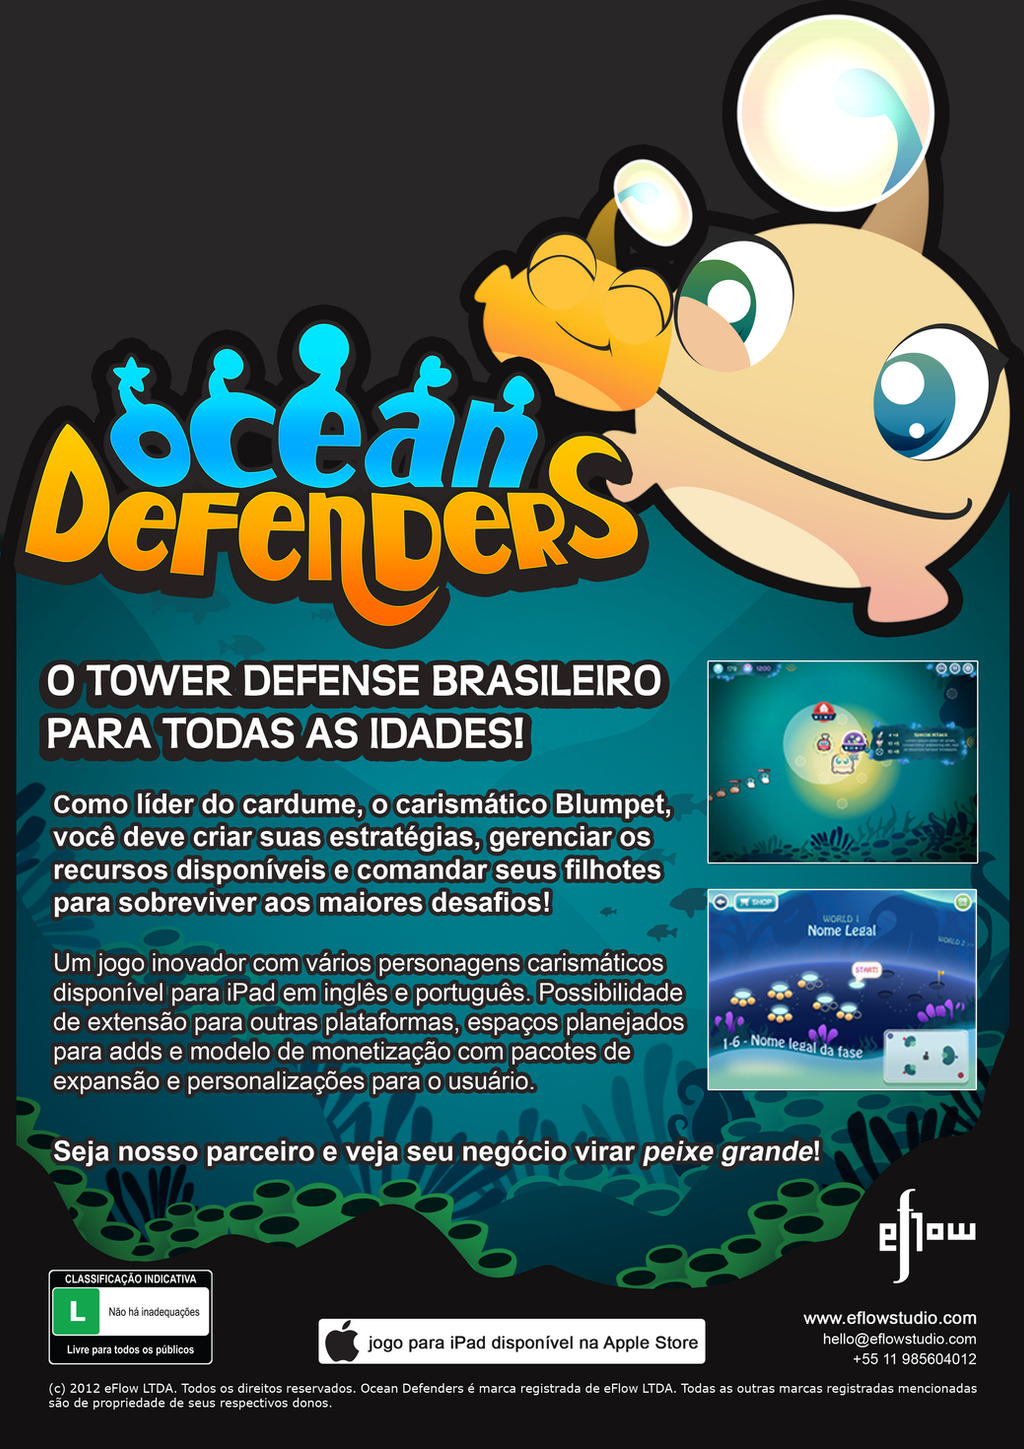 Ocean Defenders presentation